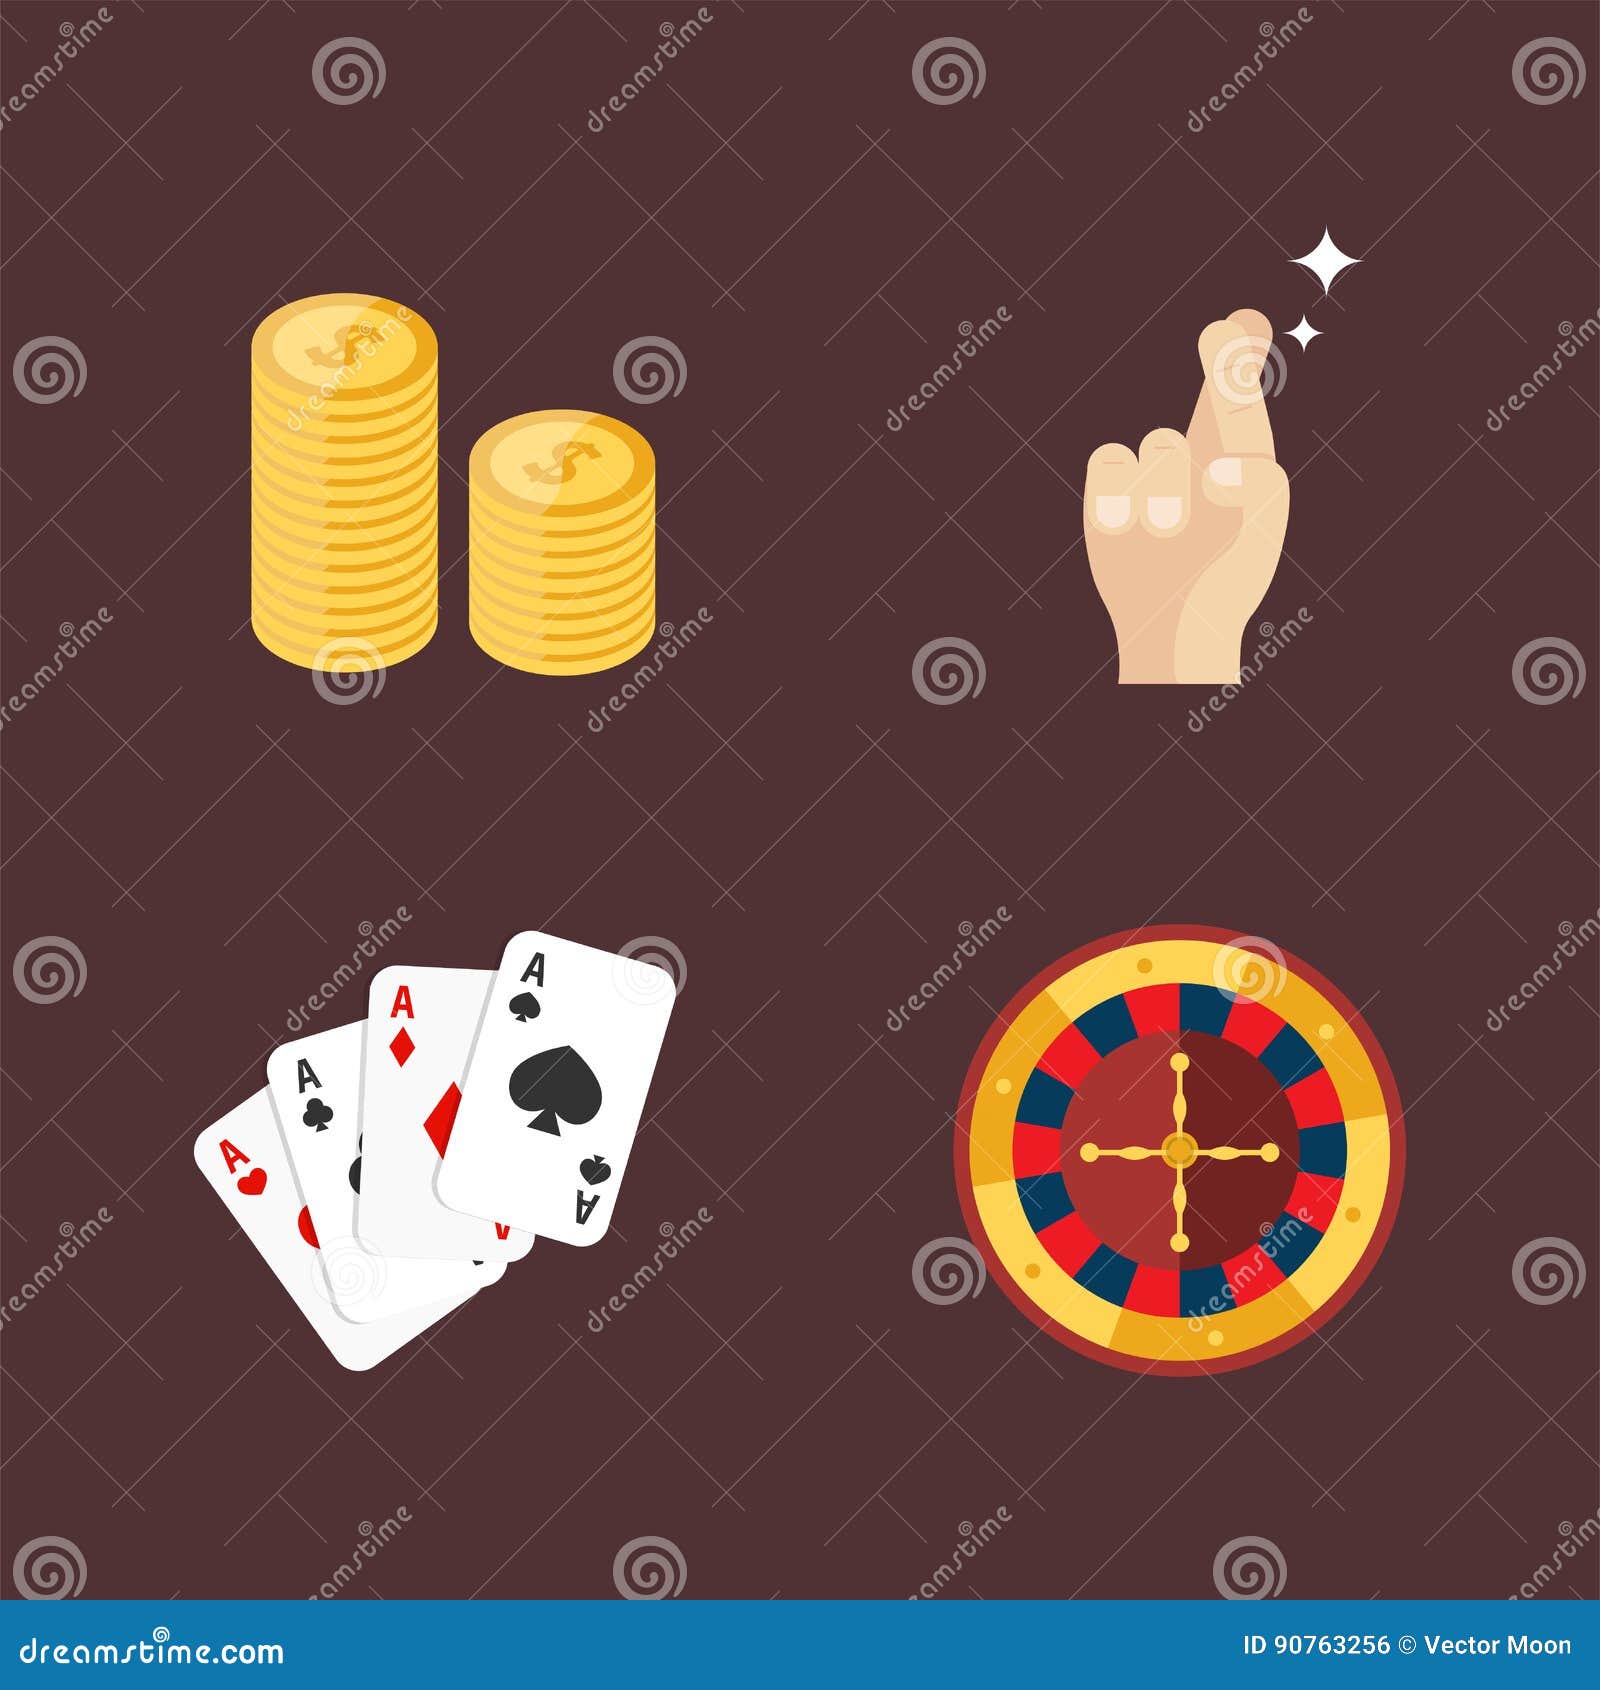 Betfair casino - 65733